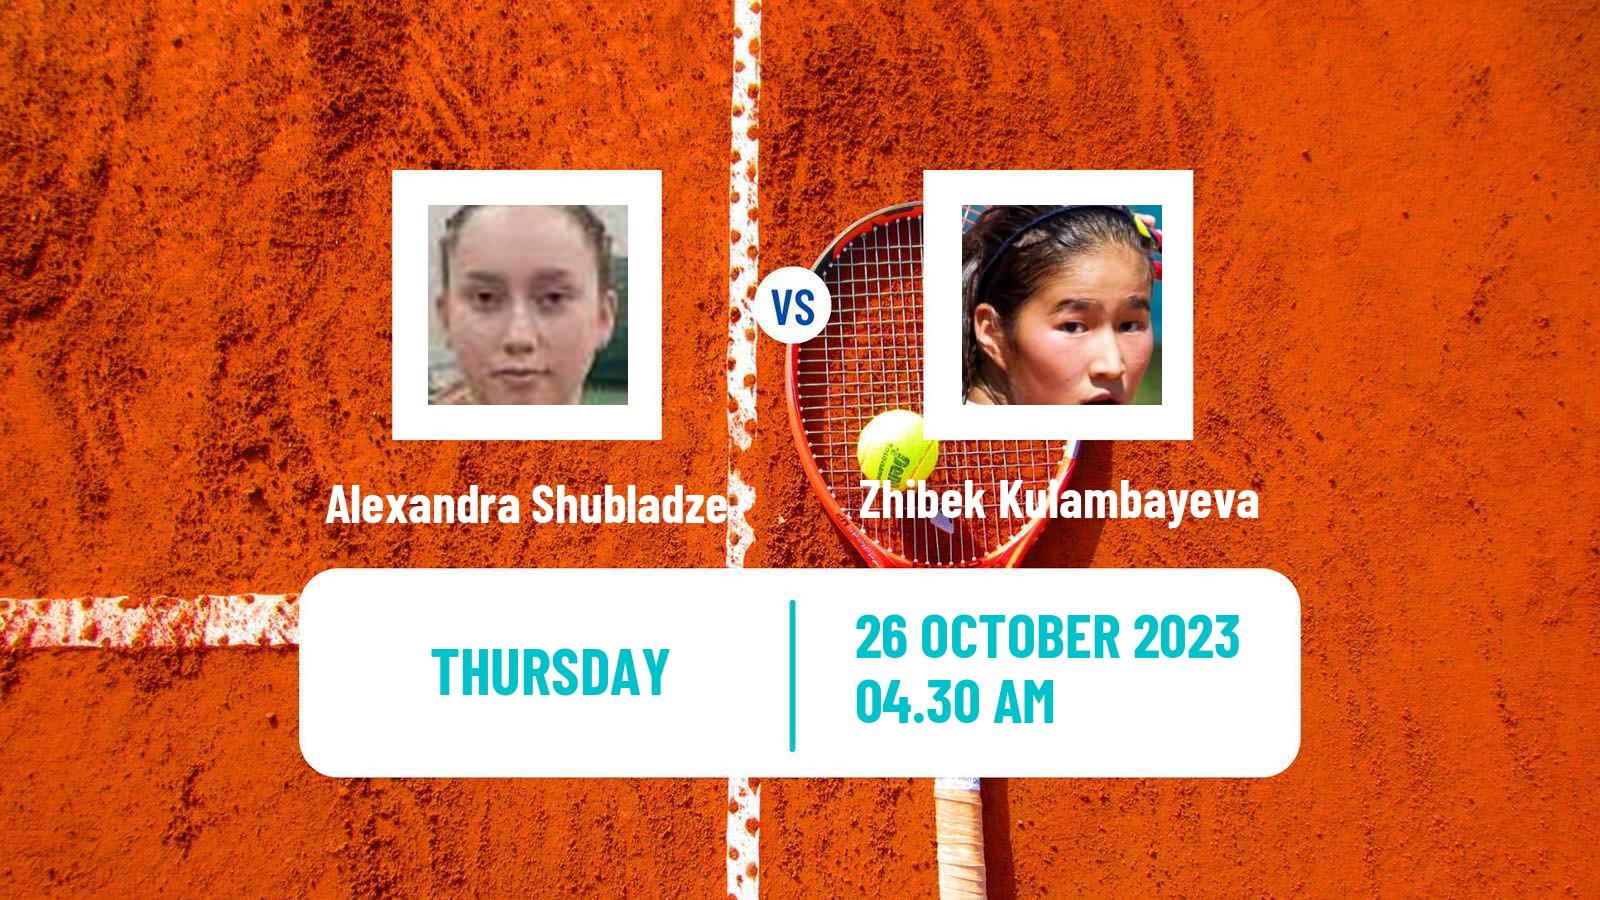 Tennis ITF W25 Sharm Elsheikh 3 Women Alexandra Shubladze - Zhibek Kulambayeva